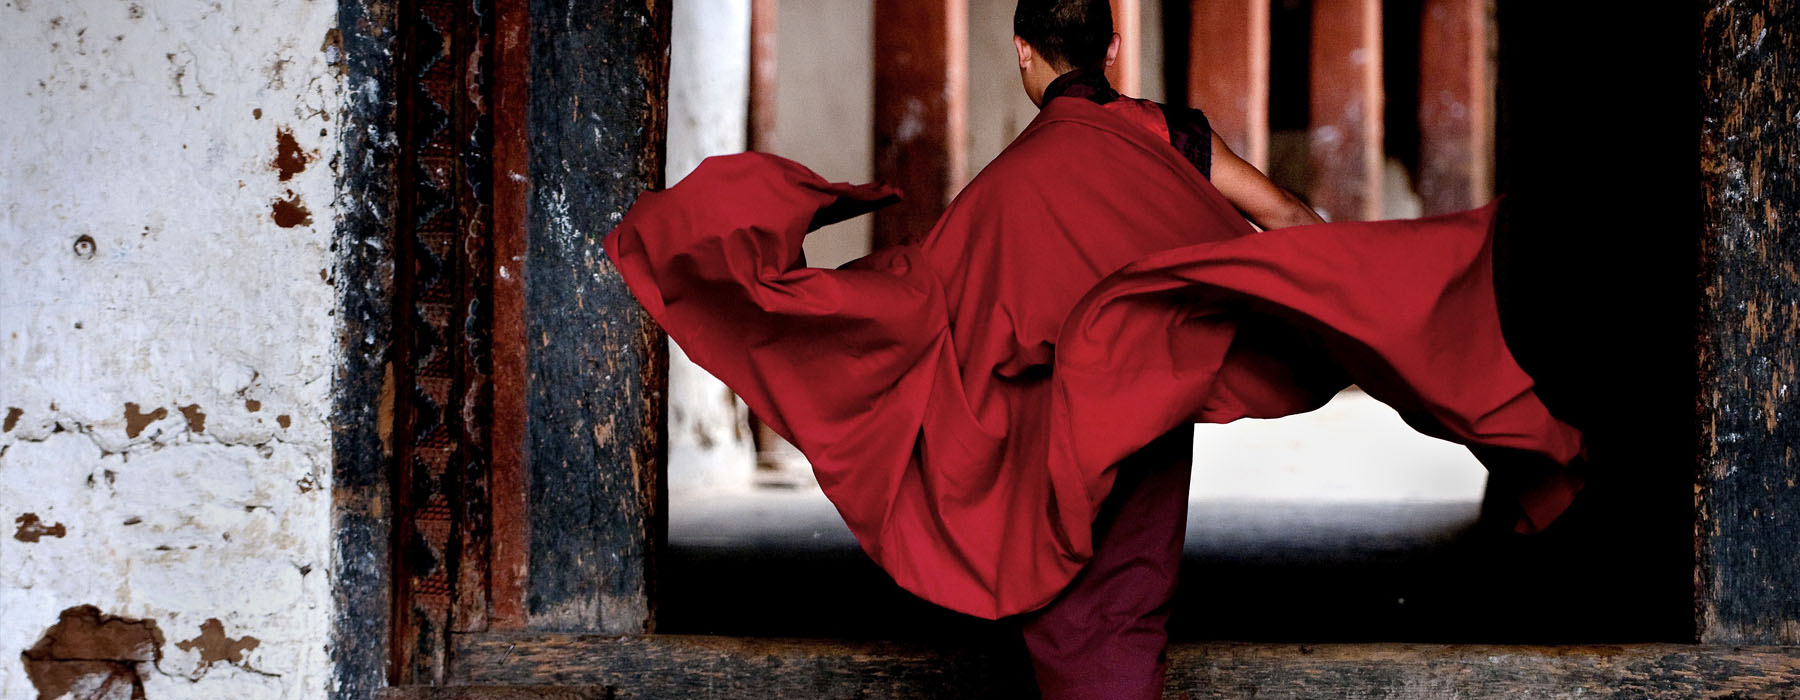 Je voyage en solo Bhoutan